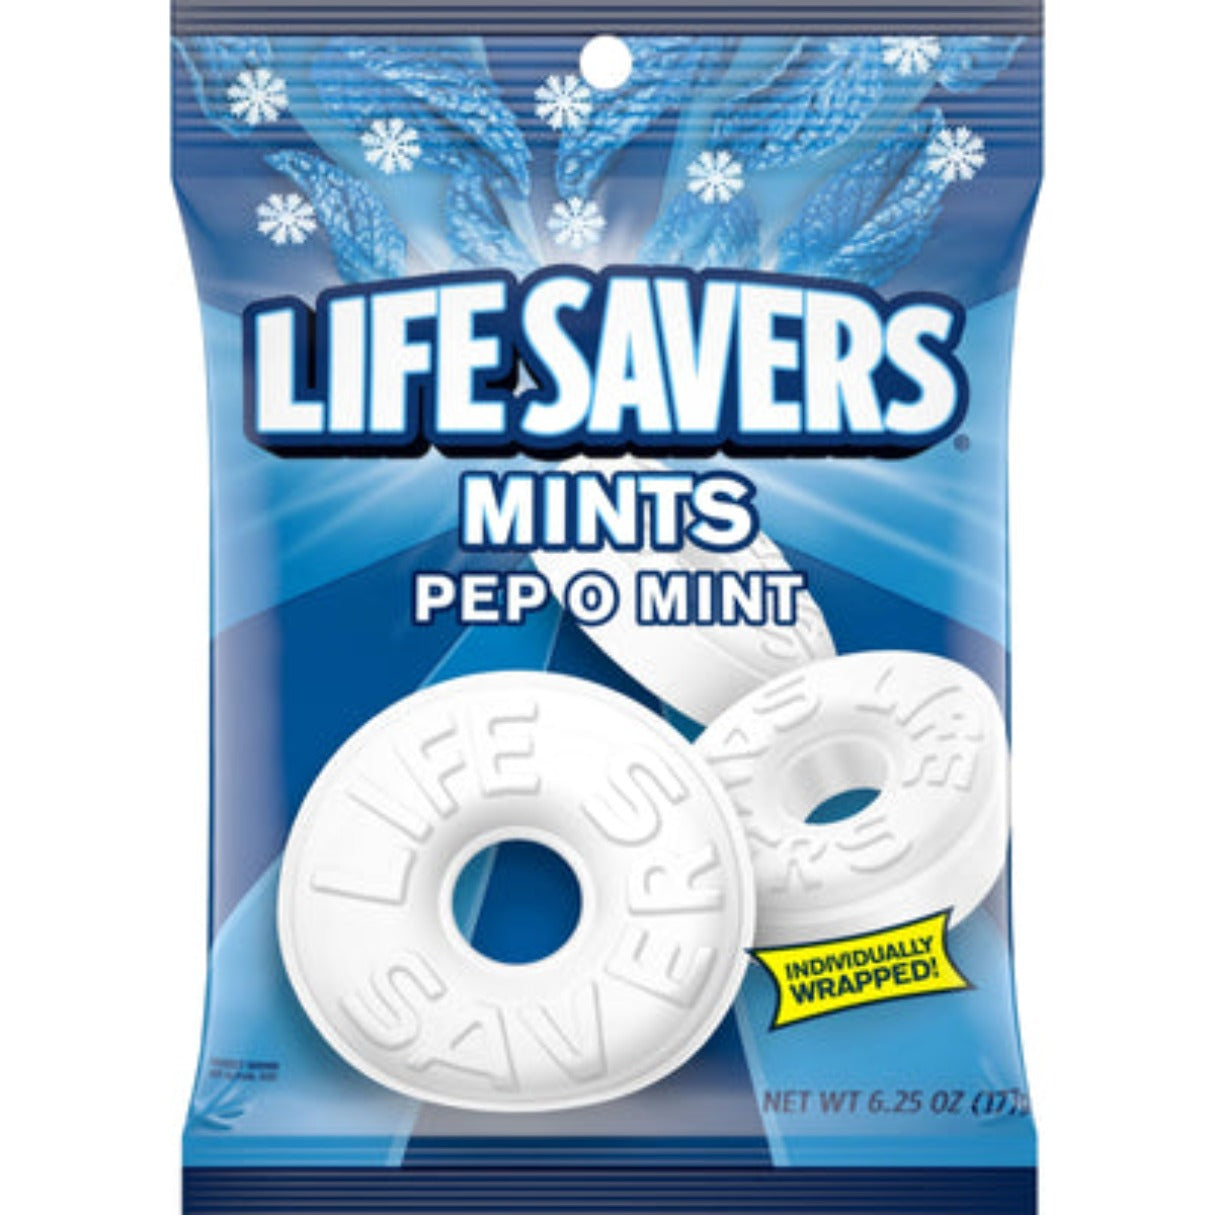 Life Savers Singles Pep o Mint 6.25oz - 12ct